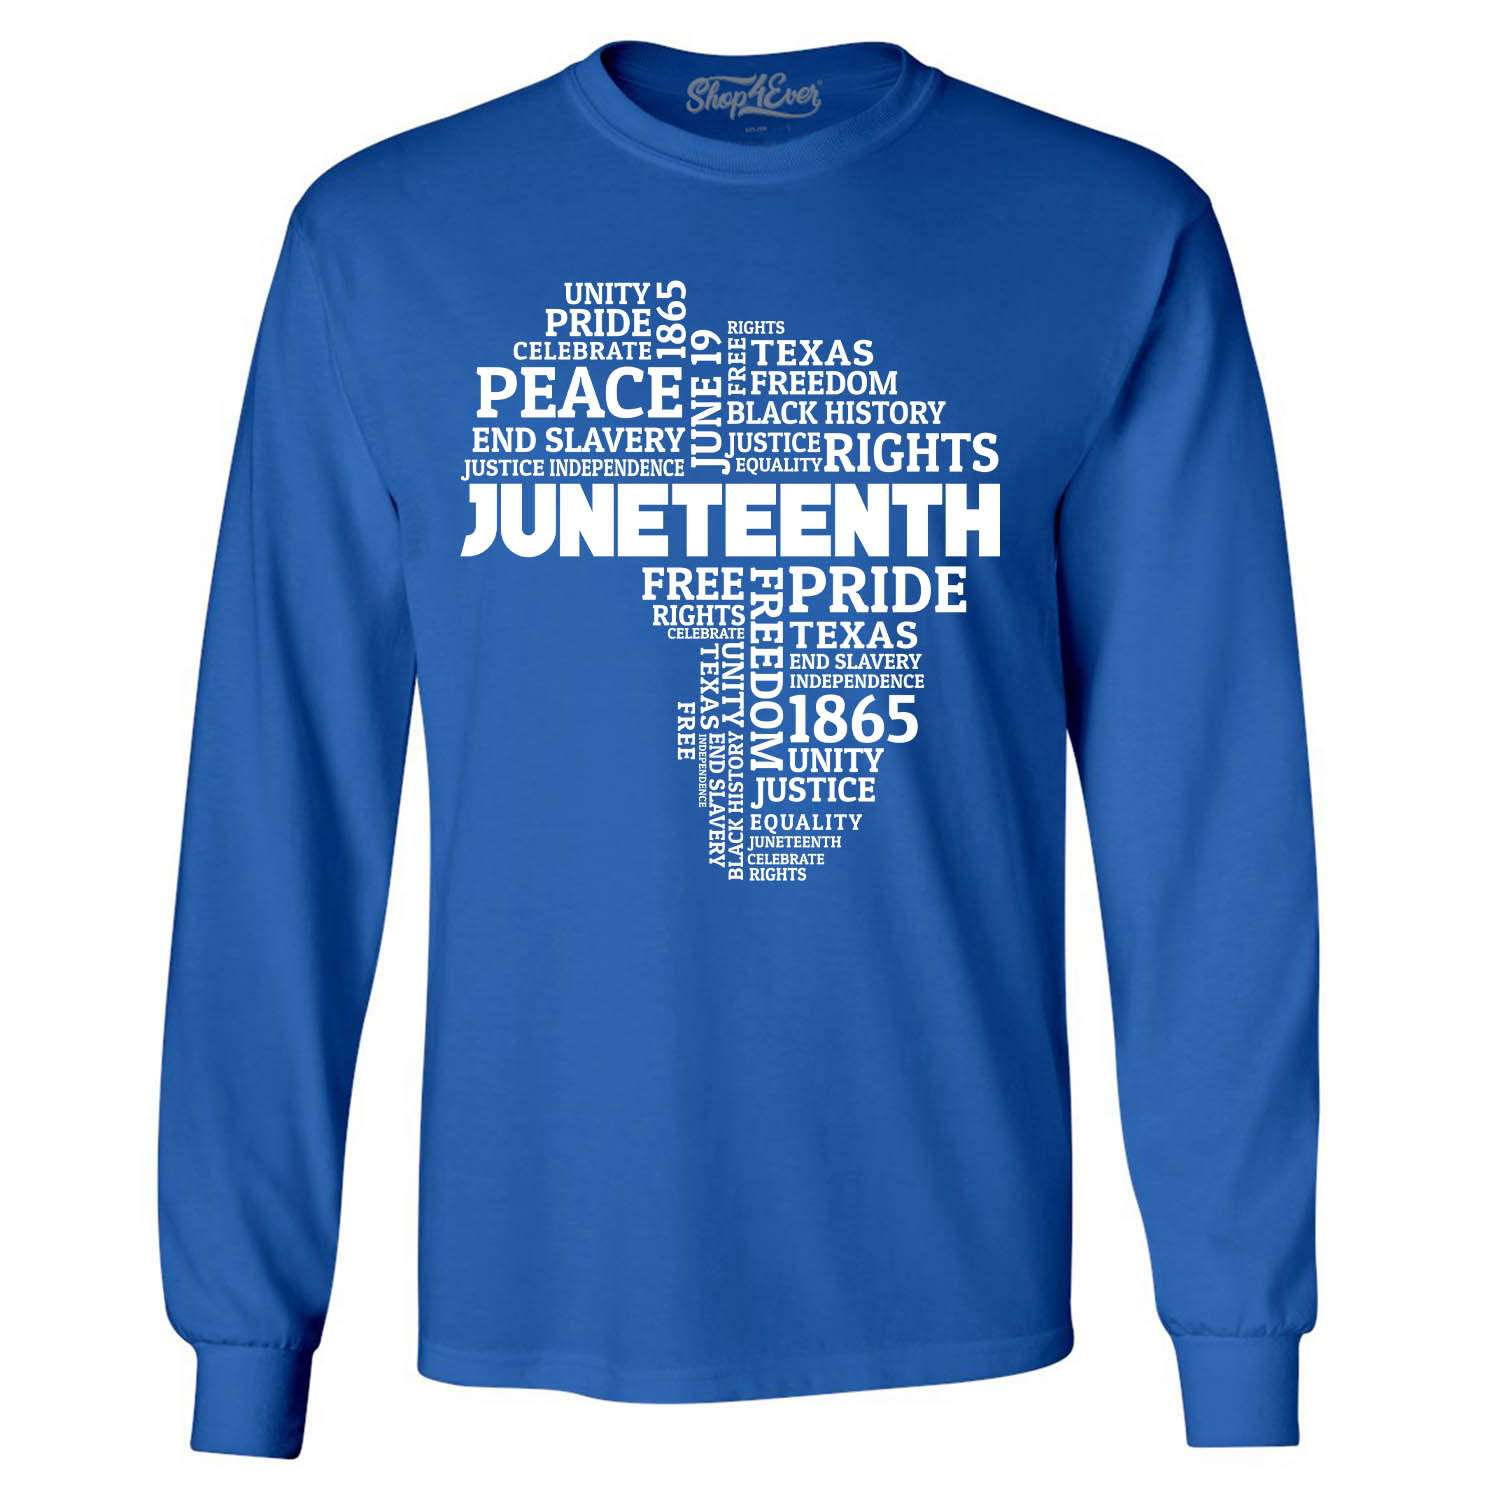 Juneteenth Freedom Shirt,Juneteenth T Shirt,Juneteenth Gift Shirt,Juneteenth Heart Shirt,Juneteenth Heart Gift tee,BLM Shirt